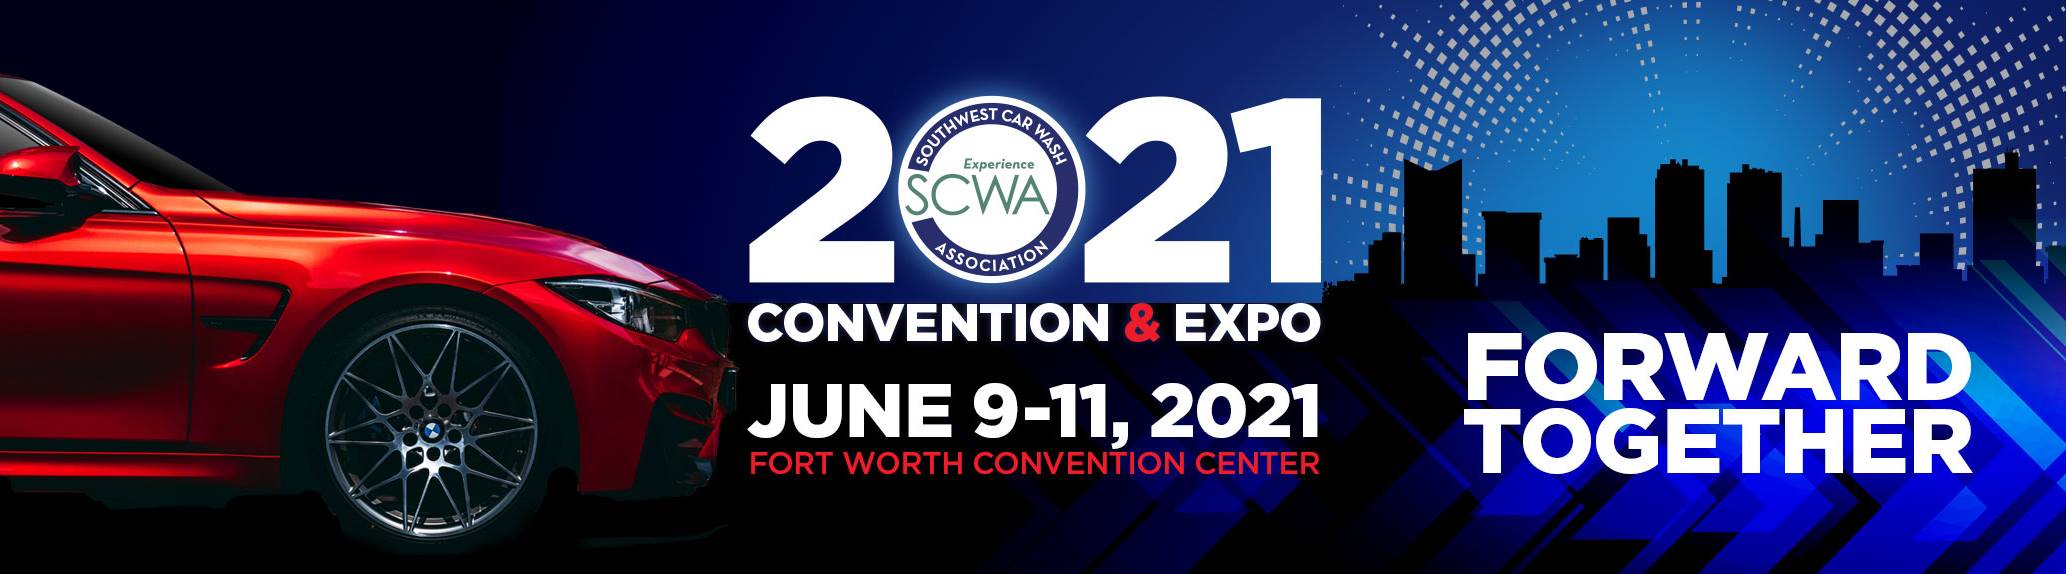 SCWA 2021 Convention & EXPO